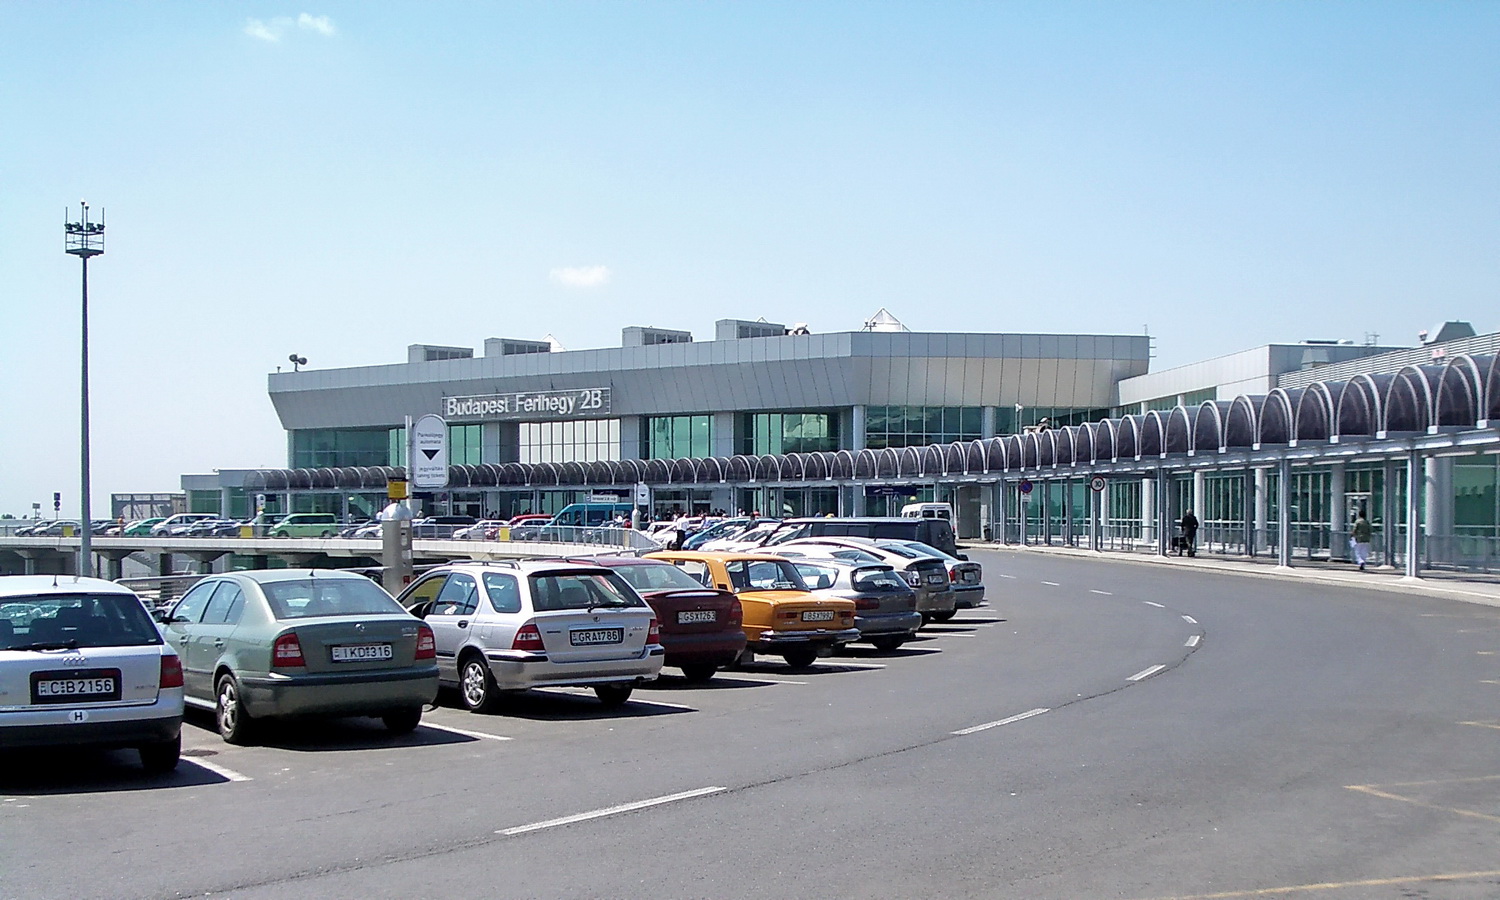 Будапешт, BUD Nemzetközi Repülőtér, Терминал 2В